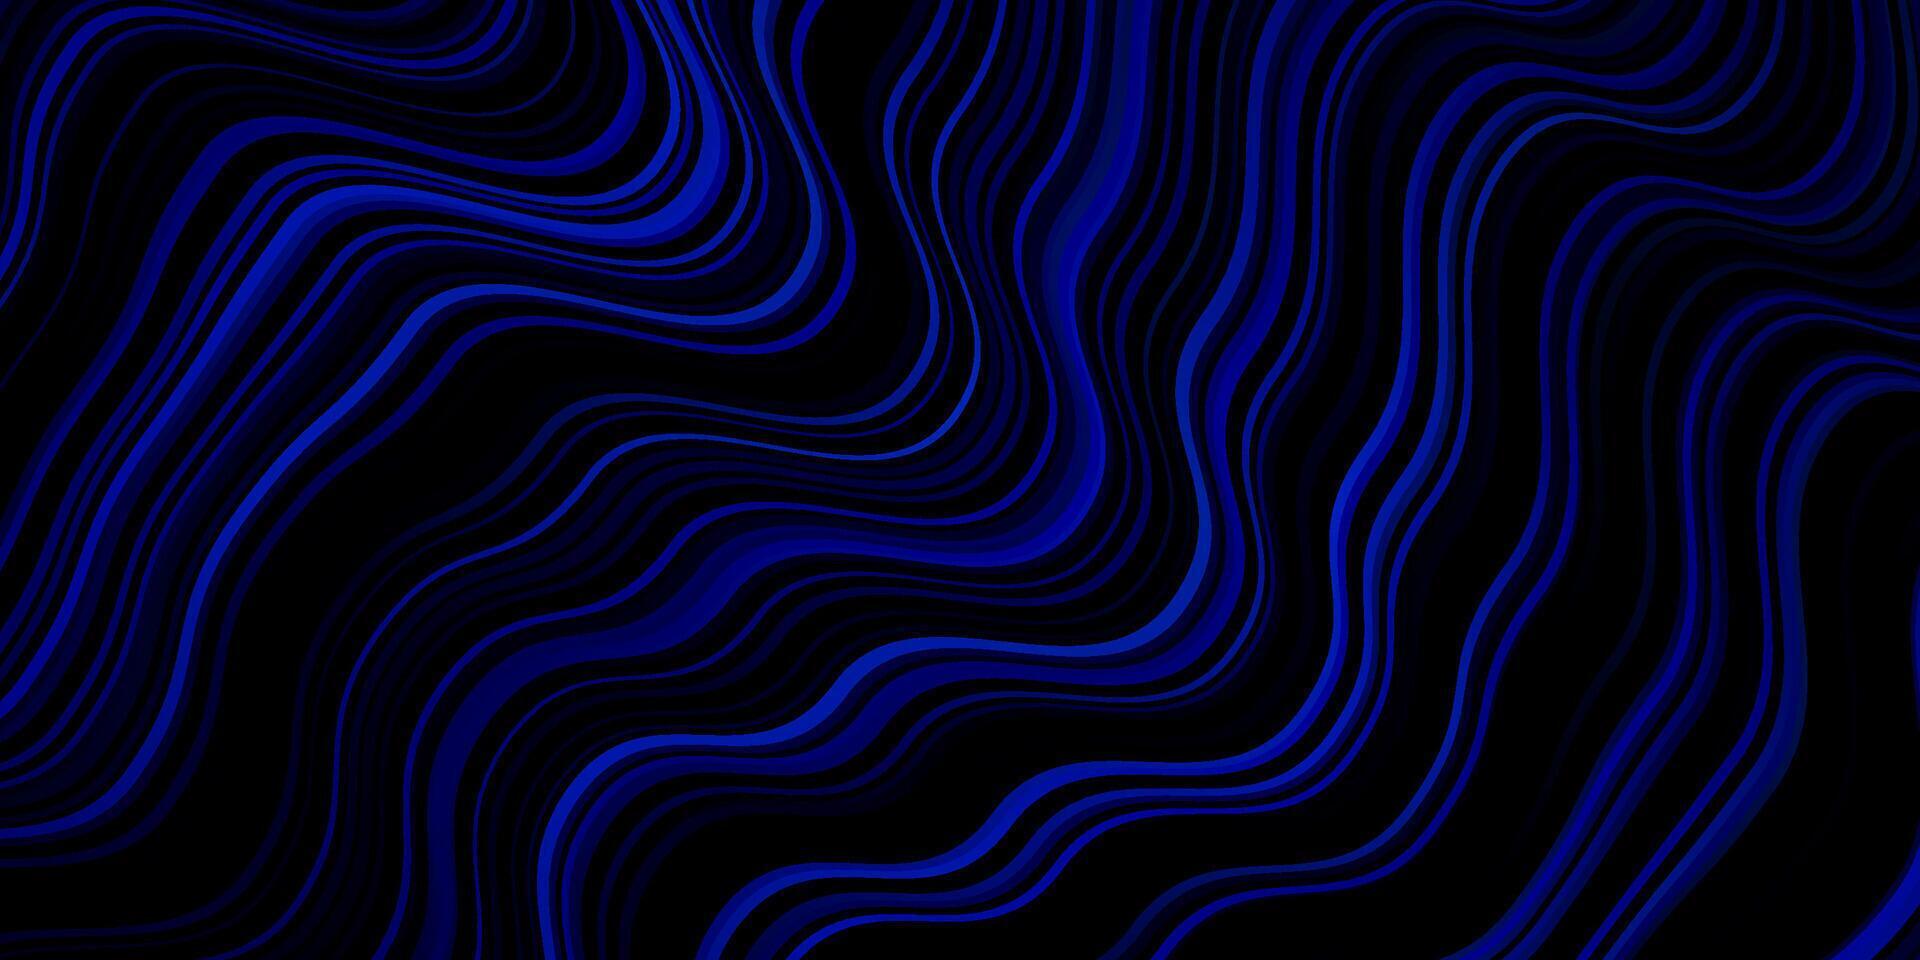 modelo de vetor azul escuro com linhas.